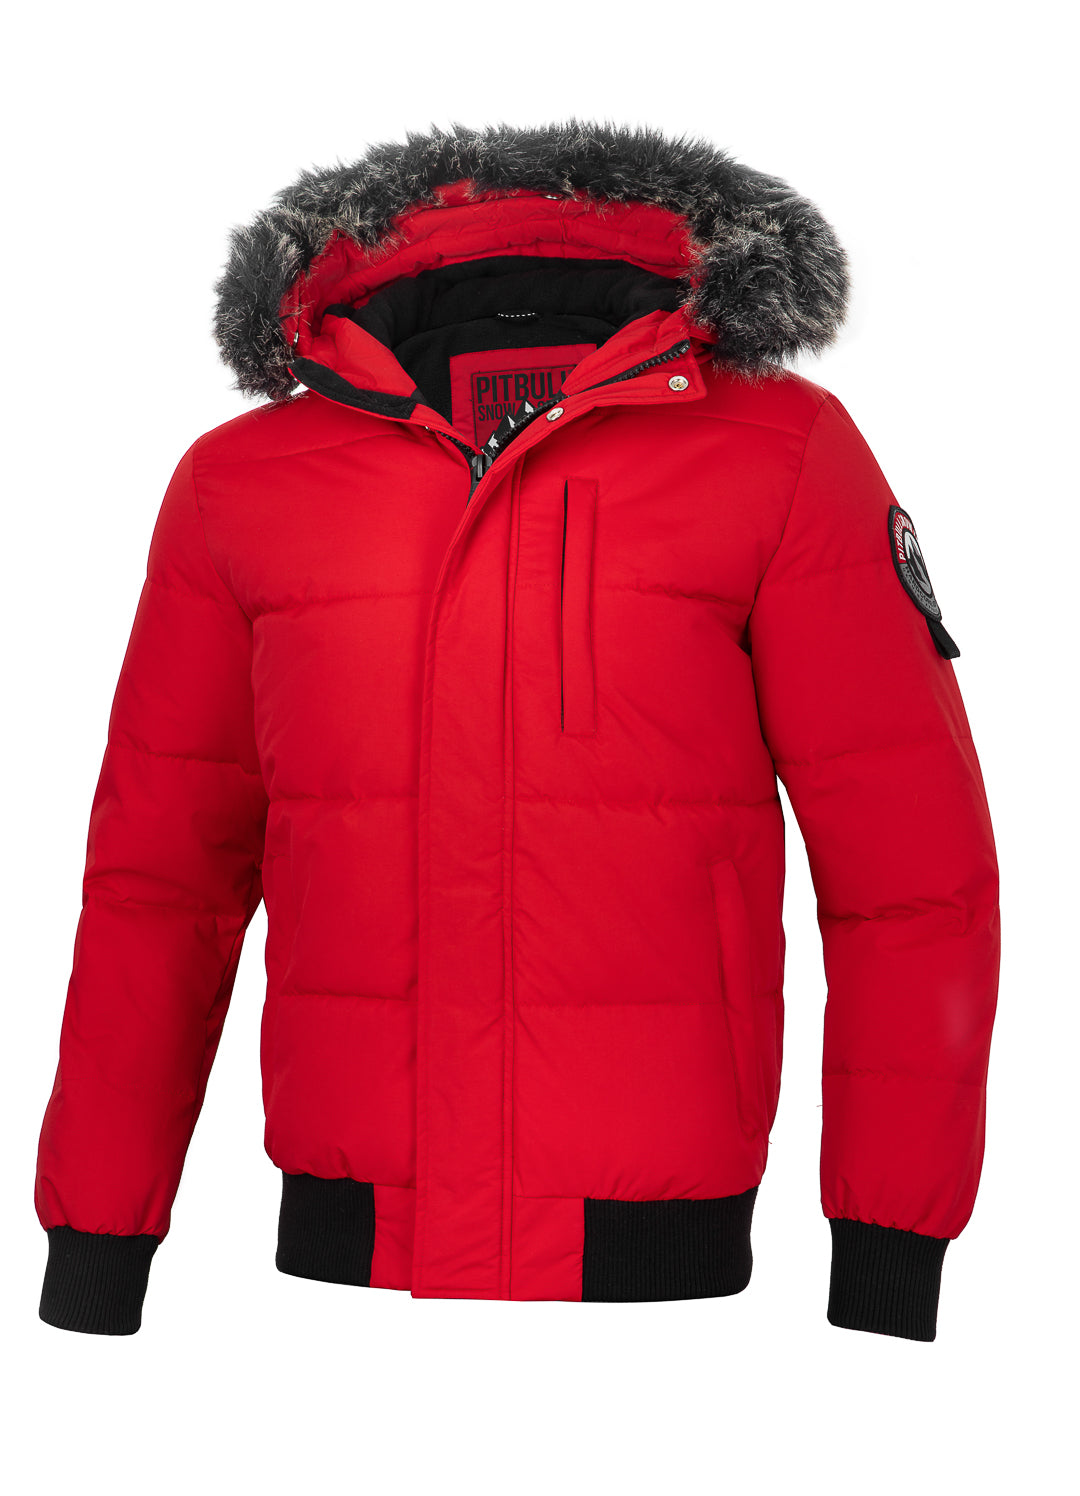 NEWPORT Red Winter Jacket